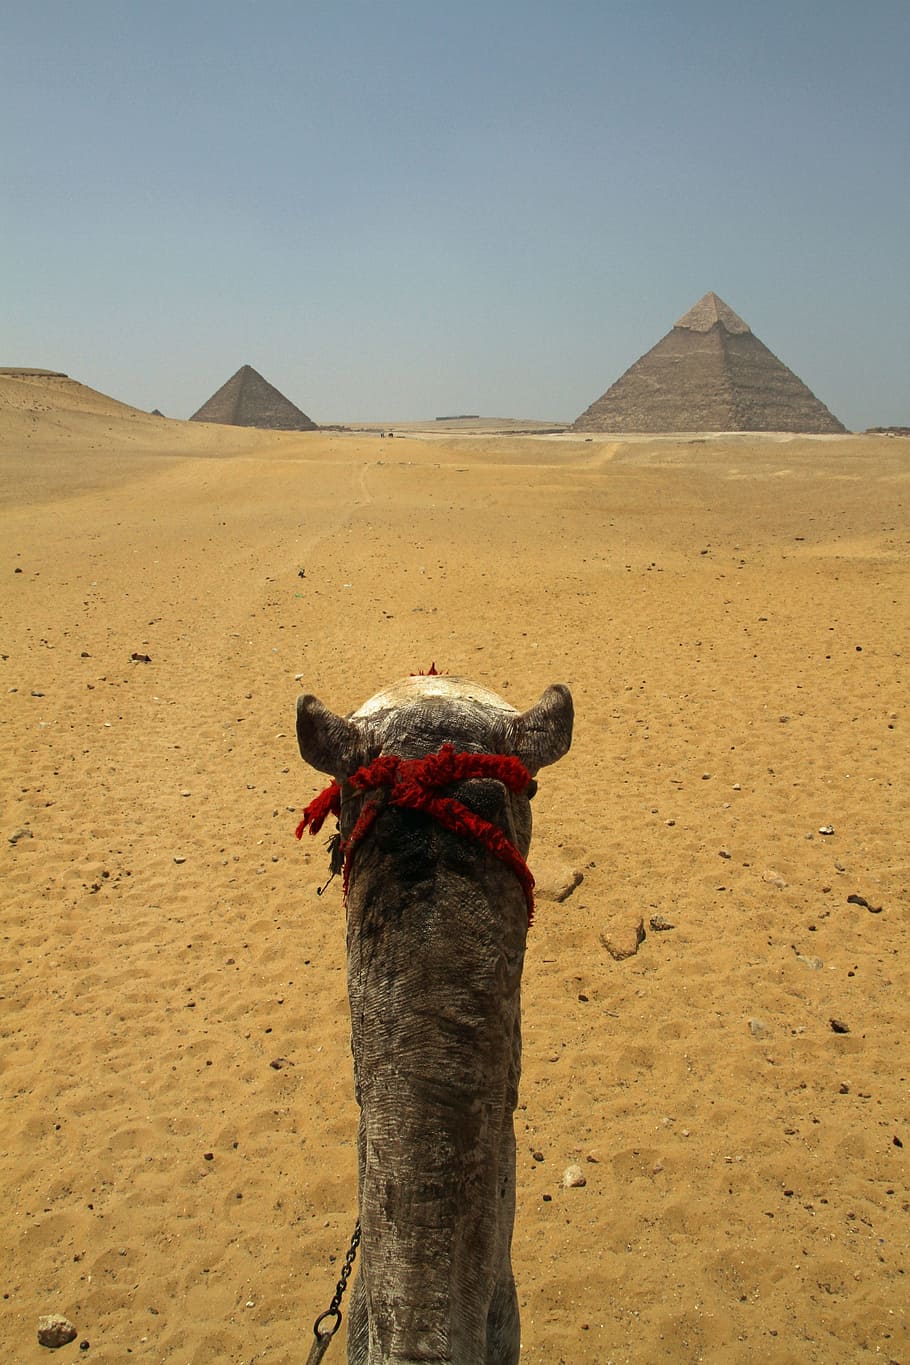 グレー, ラクダ, ピラミッド, カイロ, エジプト, 砂漠, 砂, 旅行, アフリカ, 観光